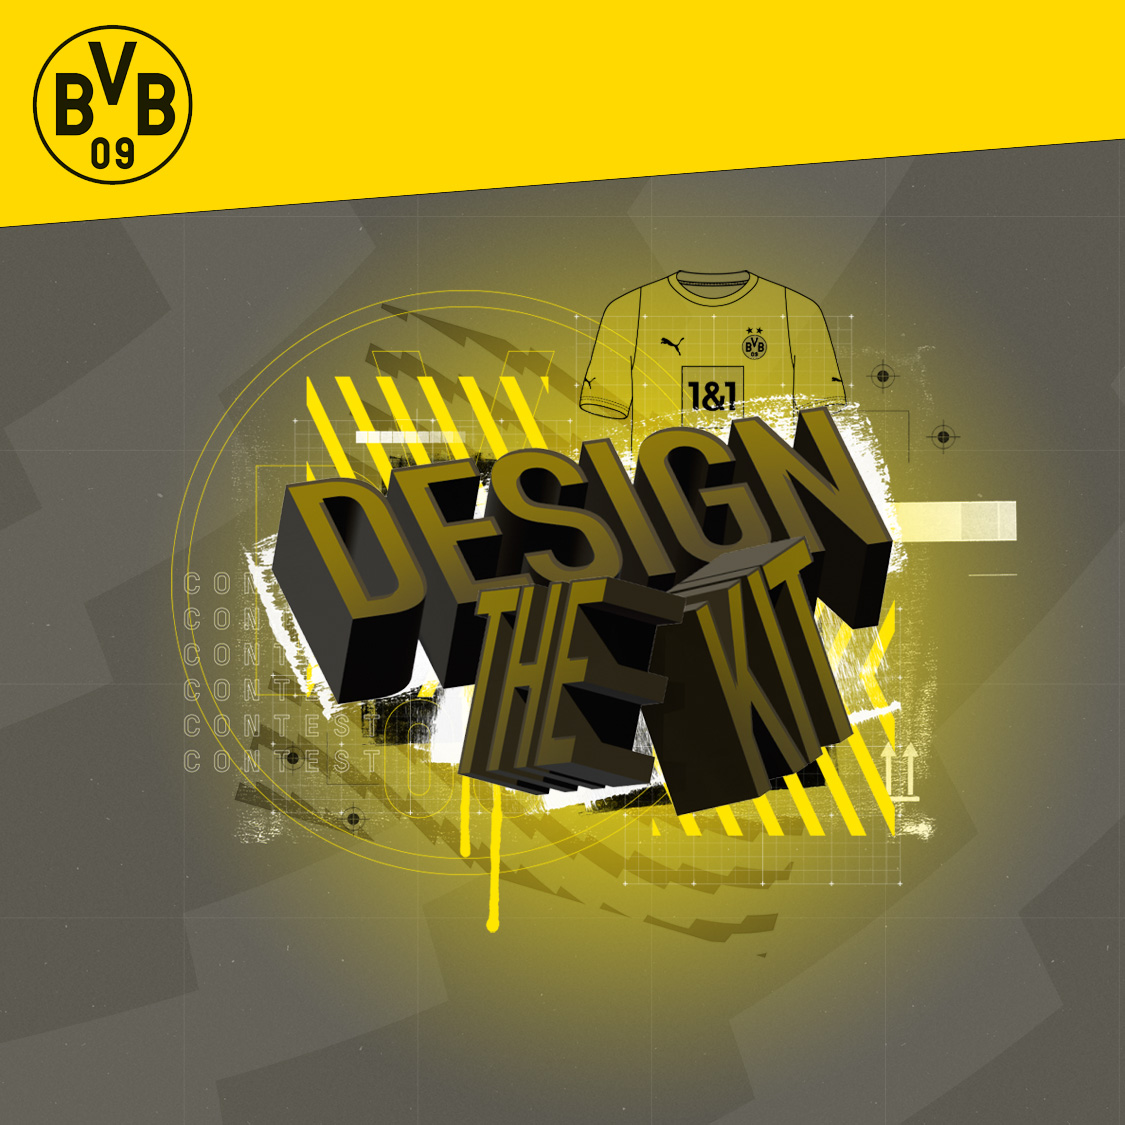 Camiseta Borussia Dortmund Concept Geometrico - Sublifits